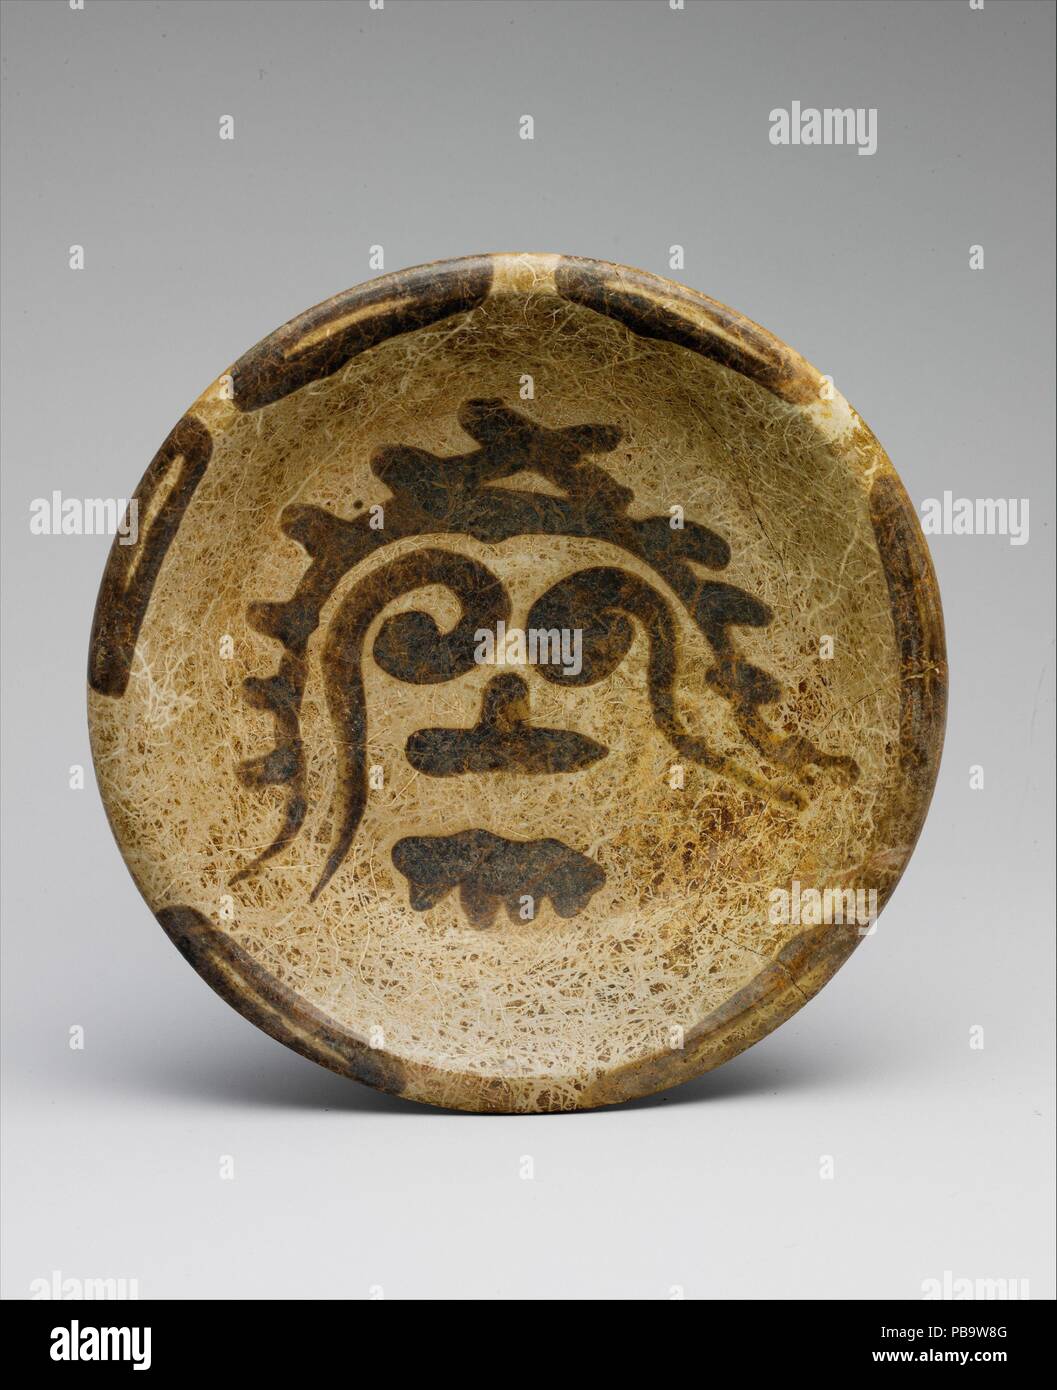 La plaque de tripode. Culture : Maya. Dimensions : H. 2 1/2 x diam. 10 7/8 in. (6,4 x 27,6 cm). Date : 9ème-10ème siècle. Mentionnée par les archéologues comme slateware, ce navire en céramique est une variété qui a été particulièrement populaire dans le nord du Yucatan au cours des siècles autour de la fin du deuxième millénaire après J.C. le slateware de couleurs, allant du beige pâle à gris-blancs doux, sont en contraste marqué avec les céramiques polychromes mayas dynamique d'autrefois. Comme dans cet exemple, la décoration est souvent limitée. L'image qui orne la surface interne de cette plaque rappelle la Mesoamerican trépied Banque D'Images